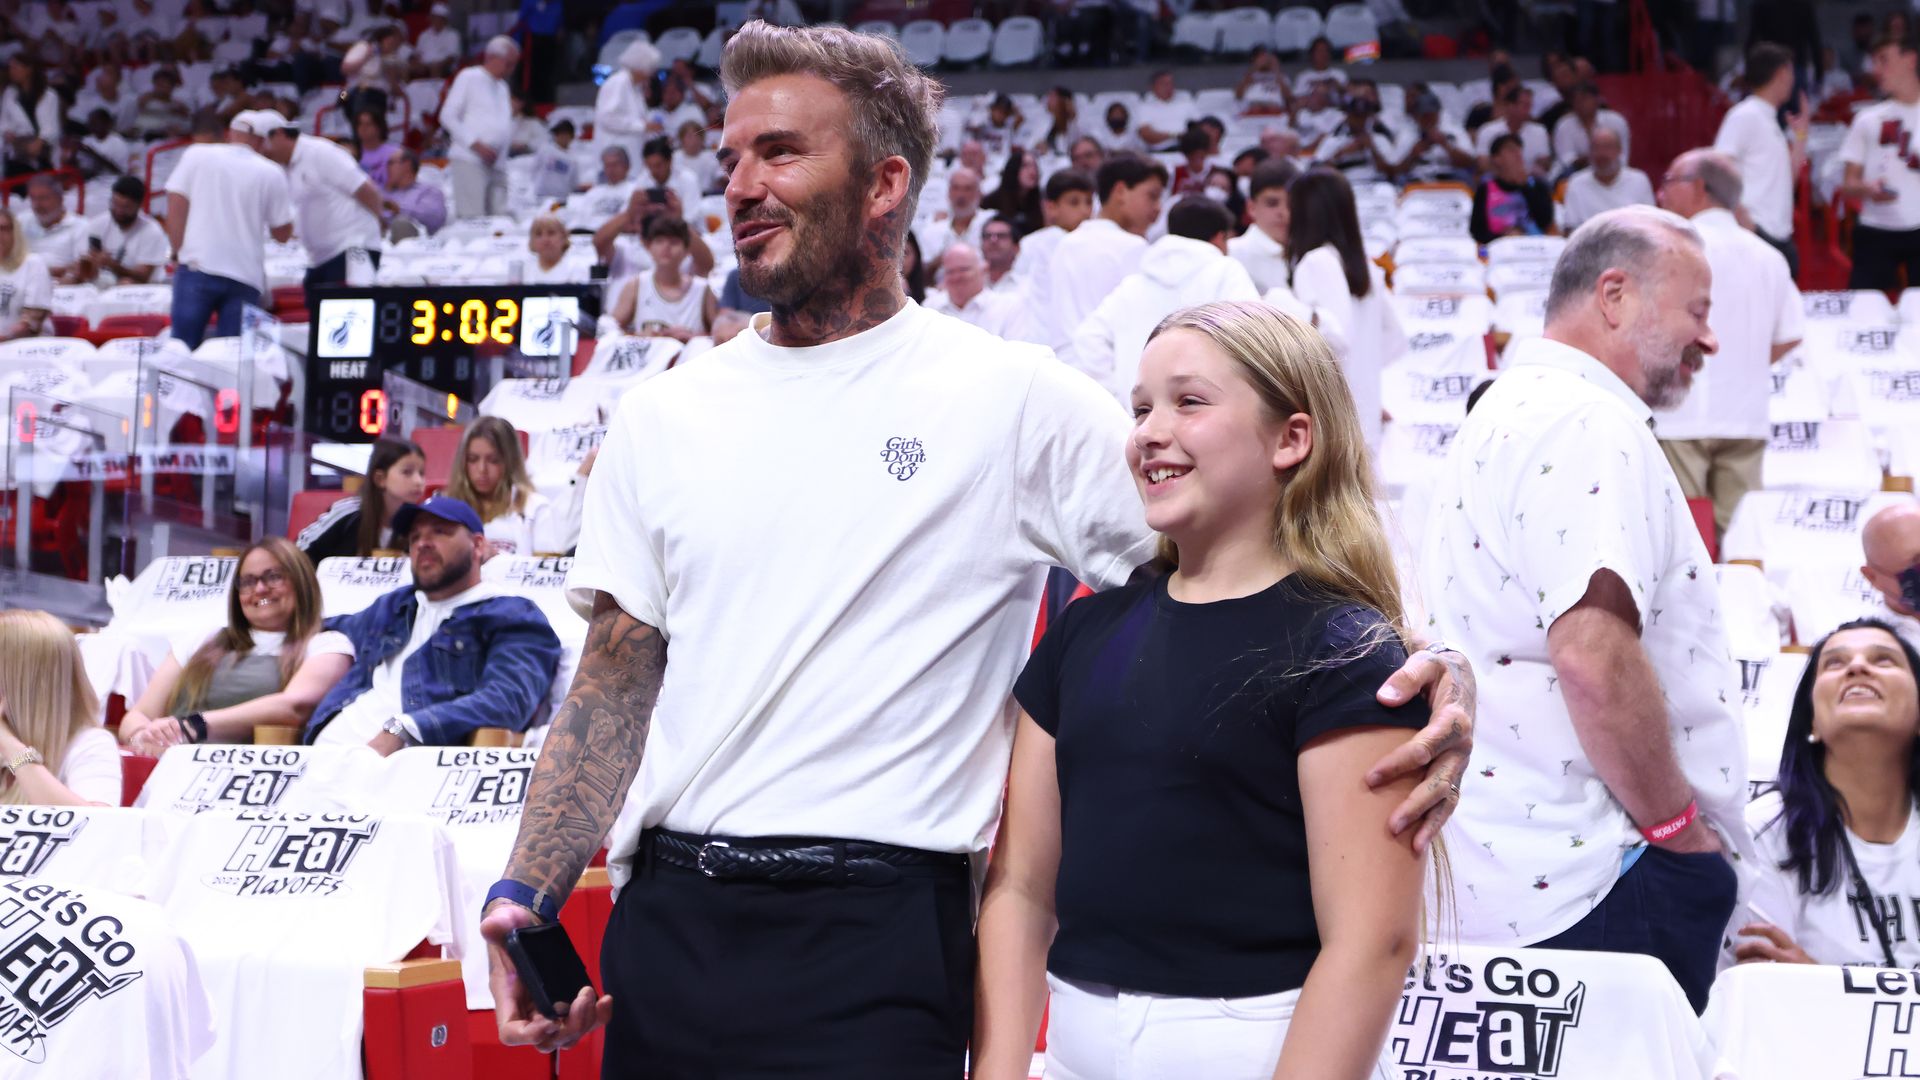 David Beckham with his arm around Harper Beckham